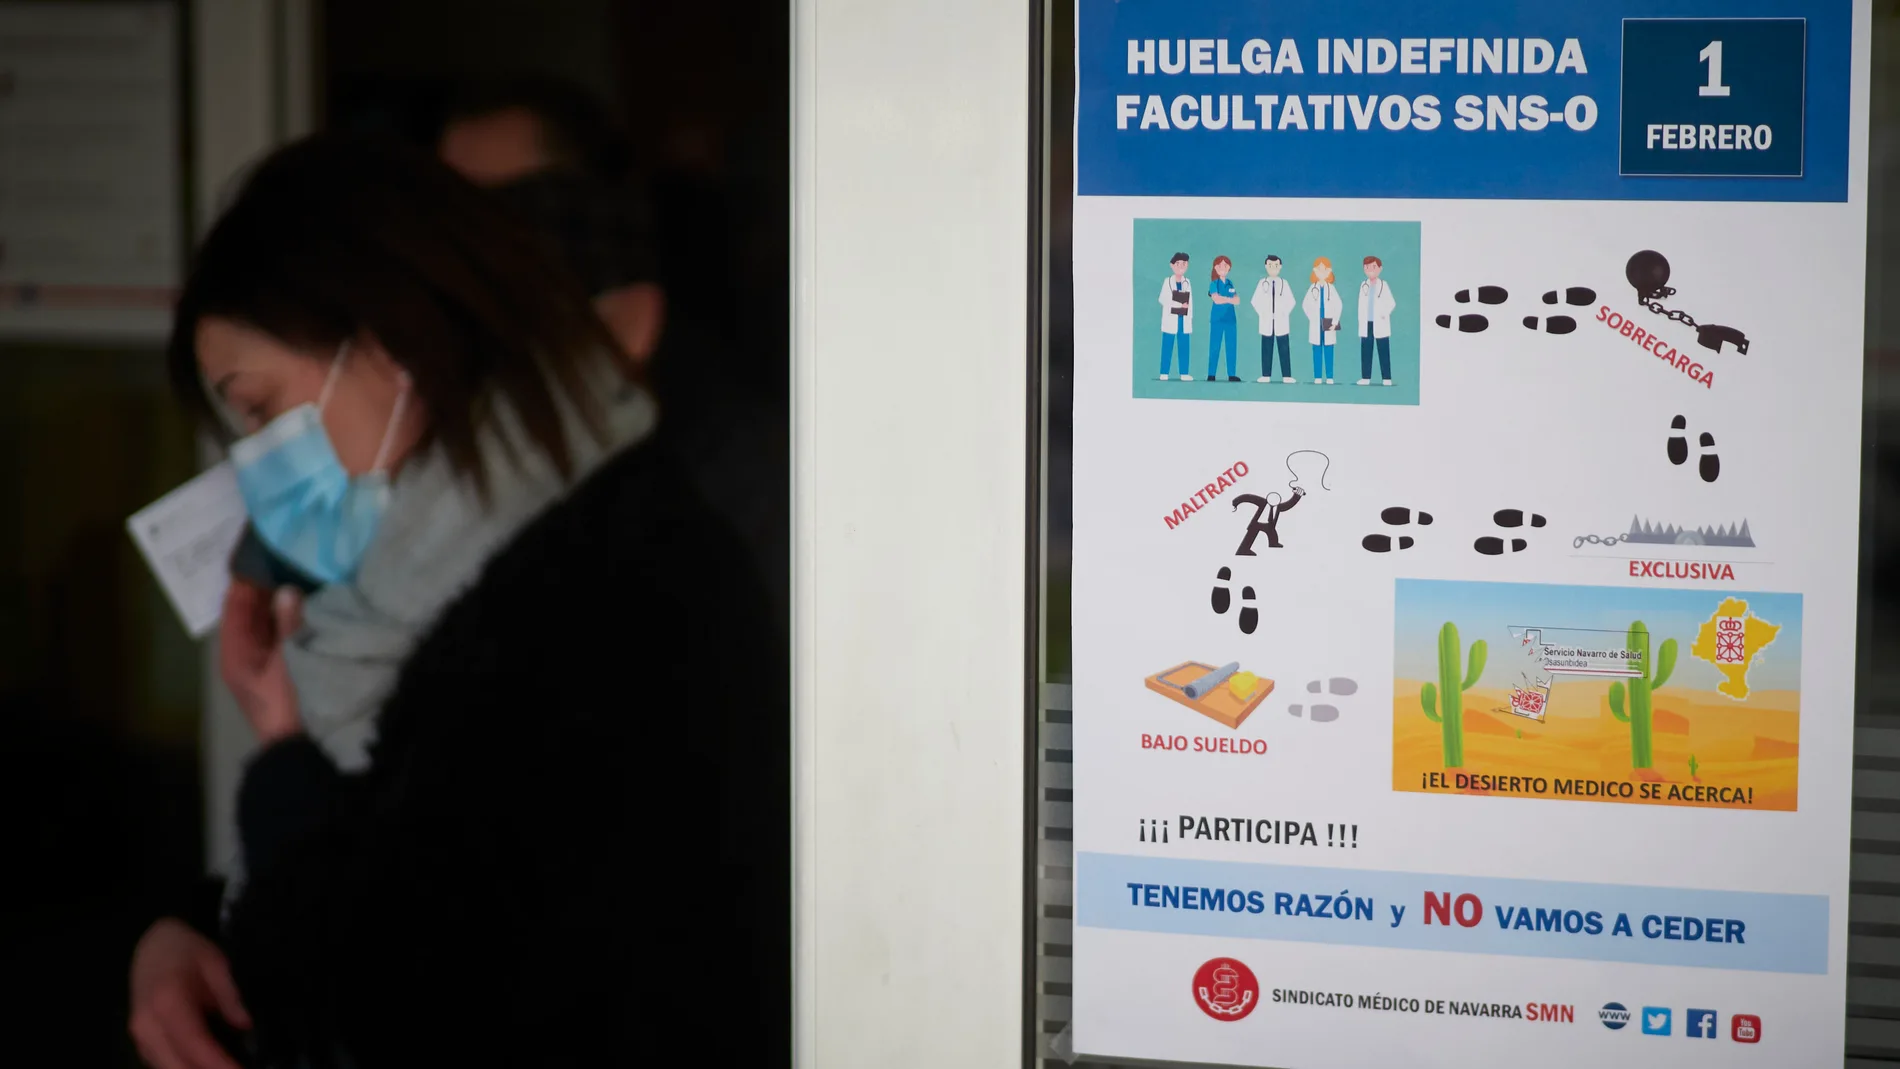 Cartel informativo de la Huelga Indefinida de Facultativos del SNS-O en el Complejo Hospitalario de Navarra el pasado día 1